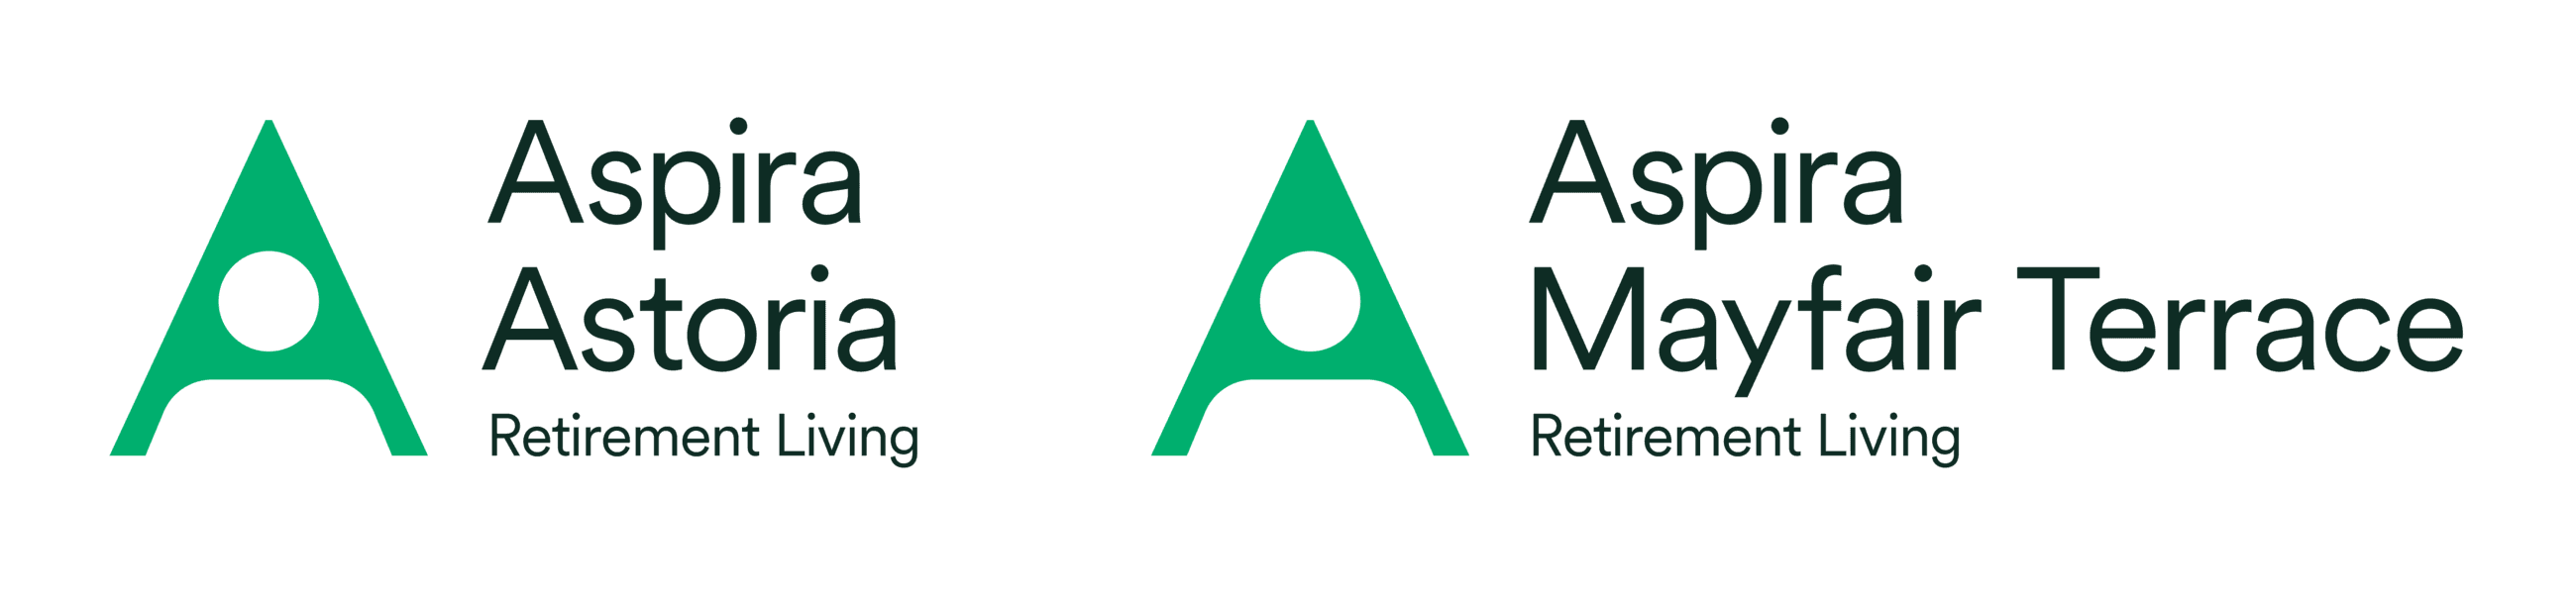 Aspira Astoria and Aspira Mayfair Terrace Logos